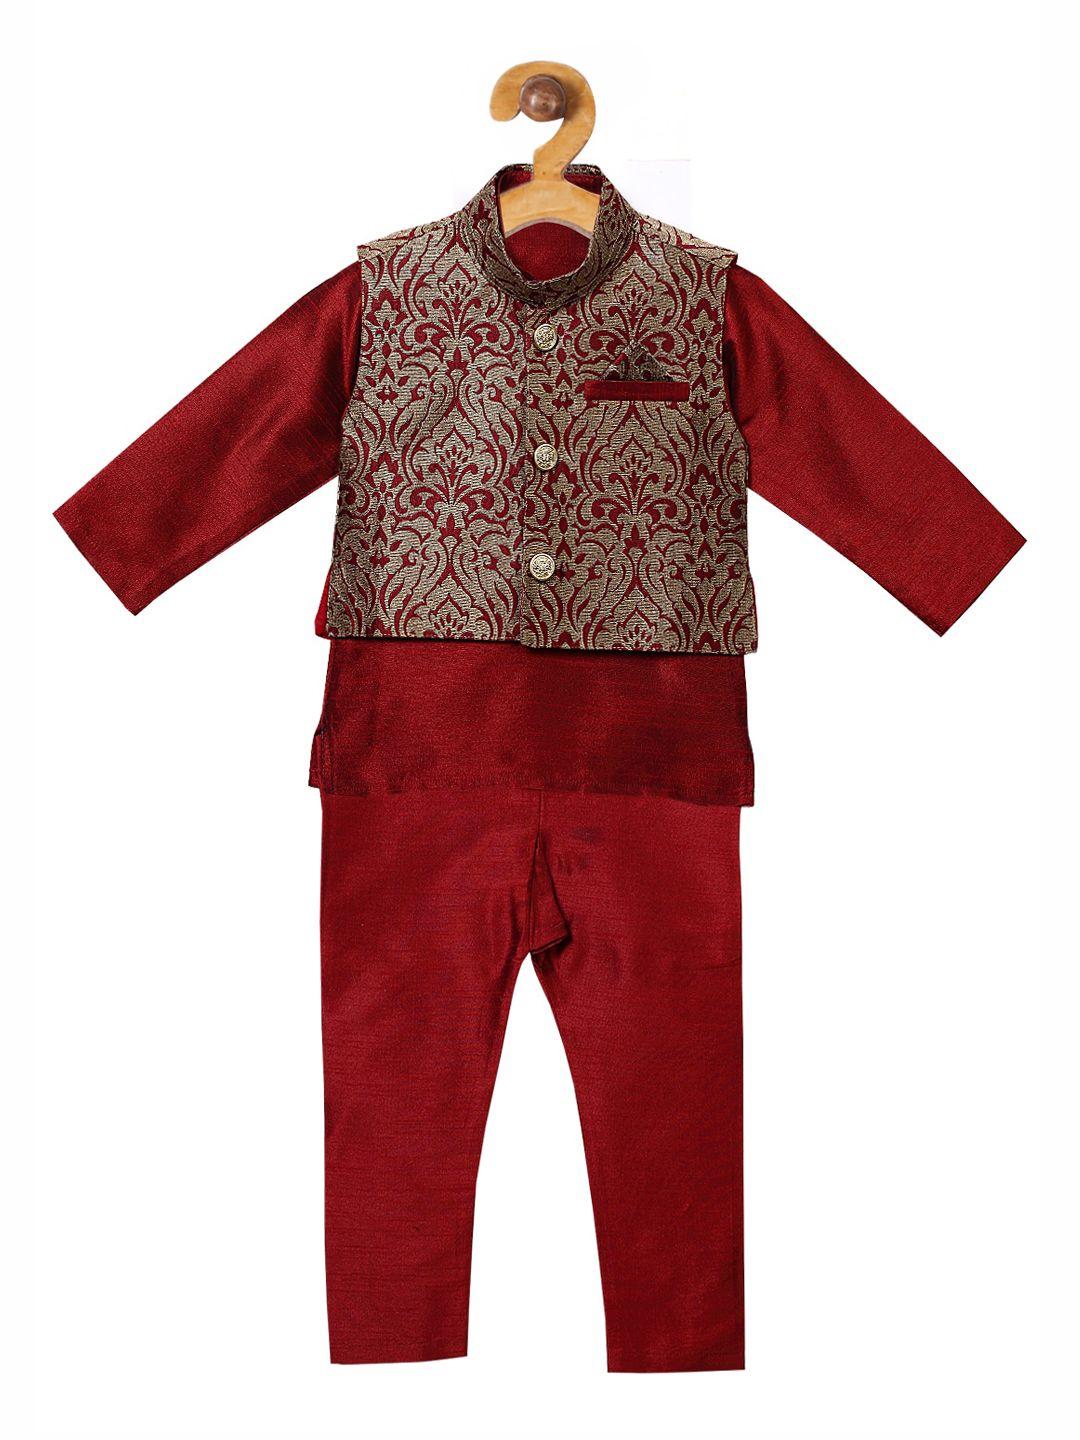 ridokidz boys maroon solid kurti with pyjamas